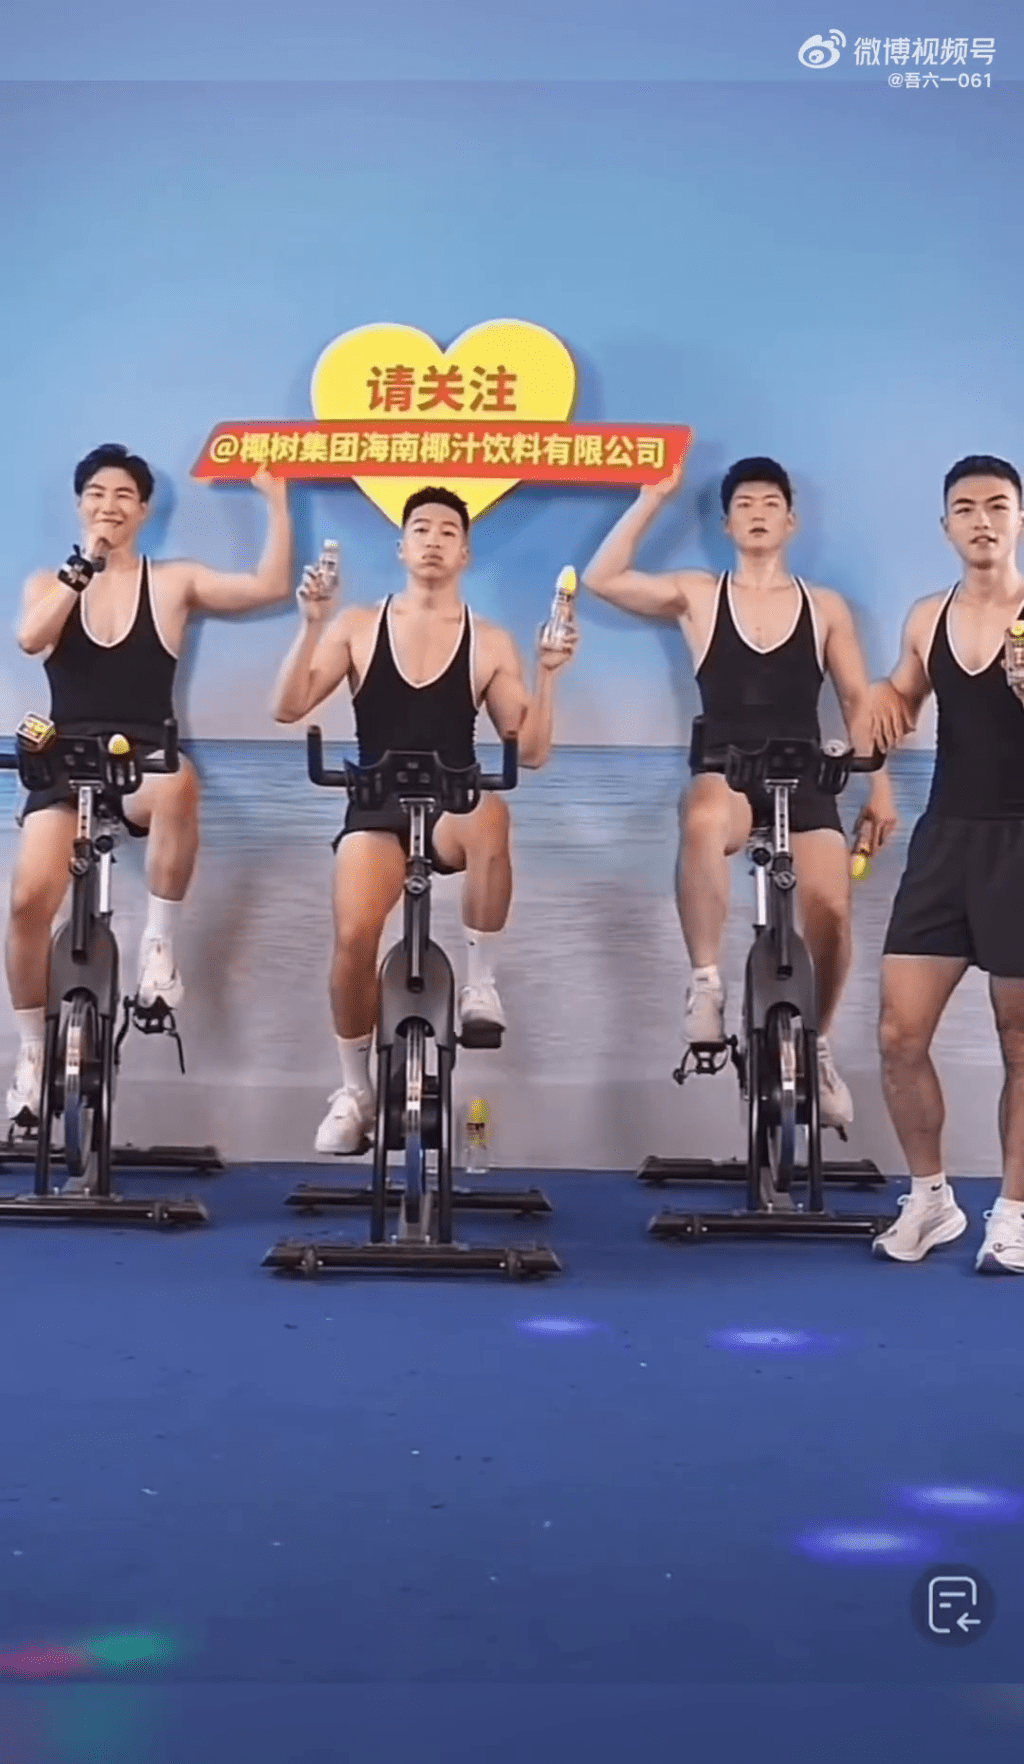 四位猛男還在健身單車上宣傳。